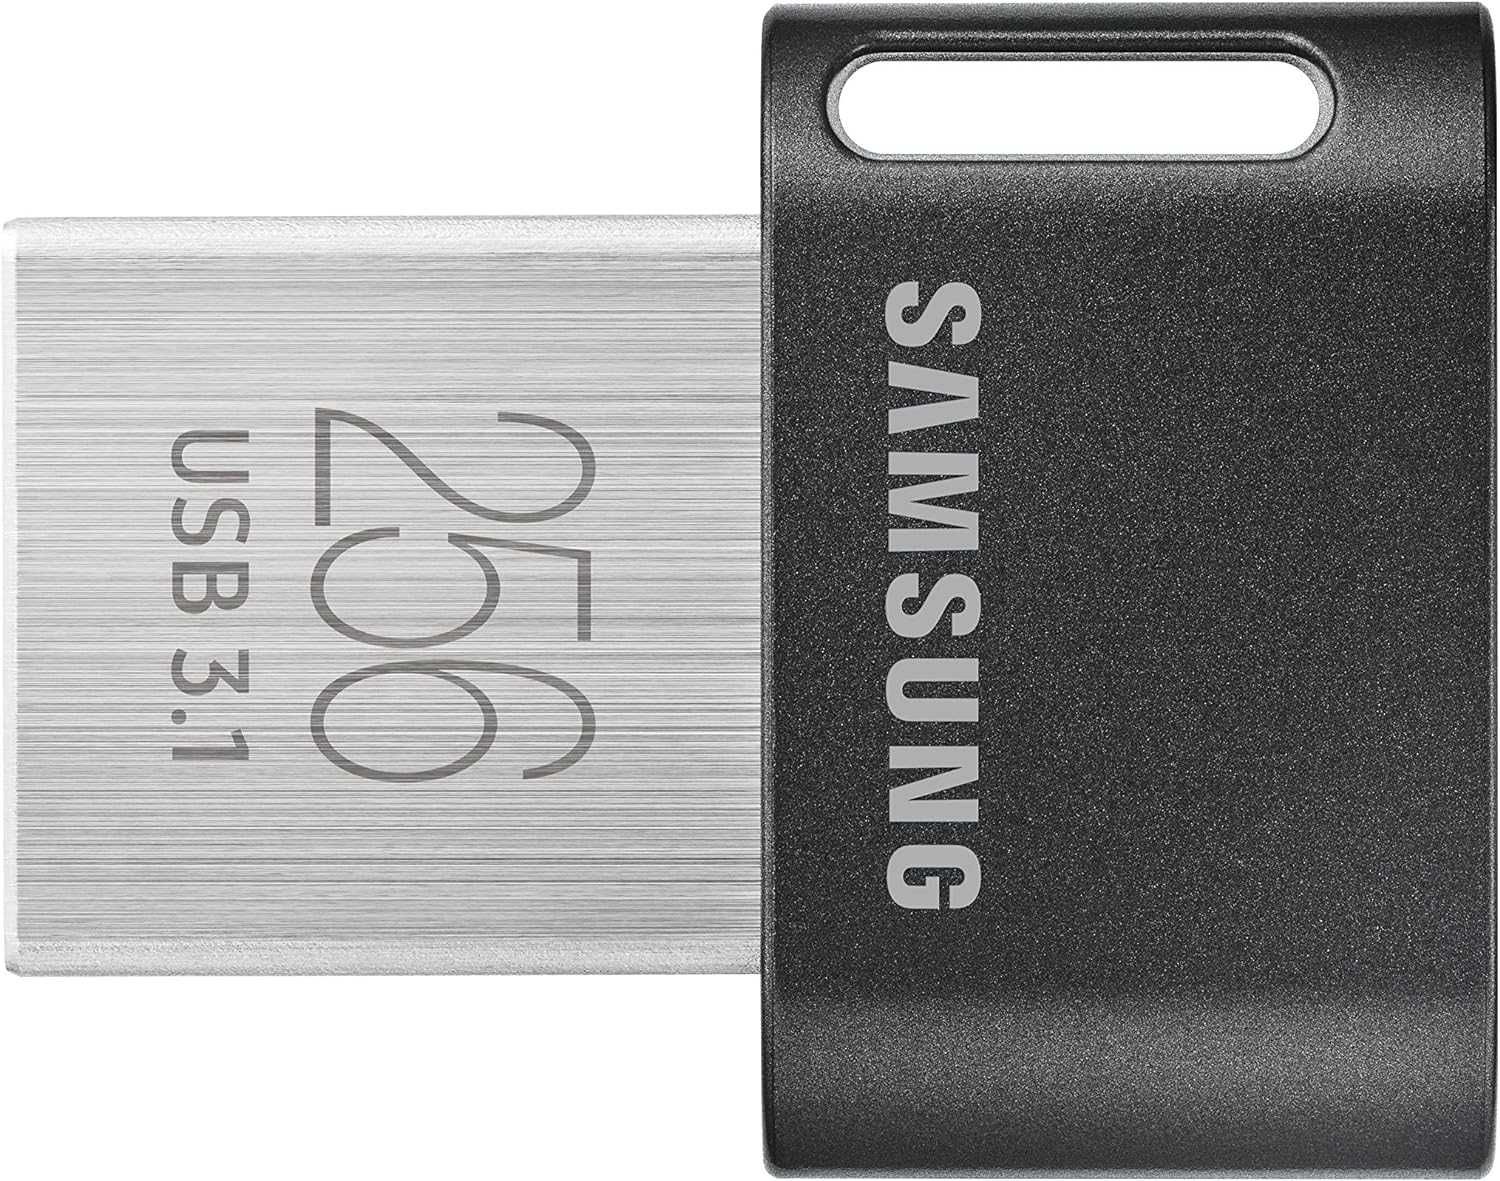 Память USB Flash 256 ГБ Samsung FIT [SAMSUNG MUF-256AB/AM]